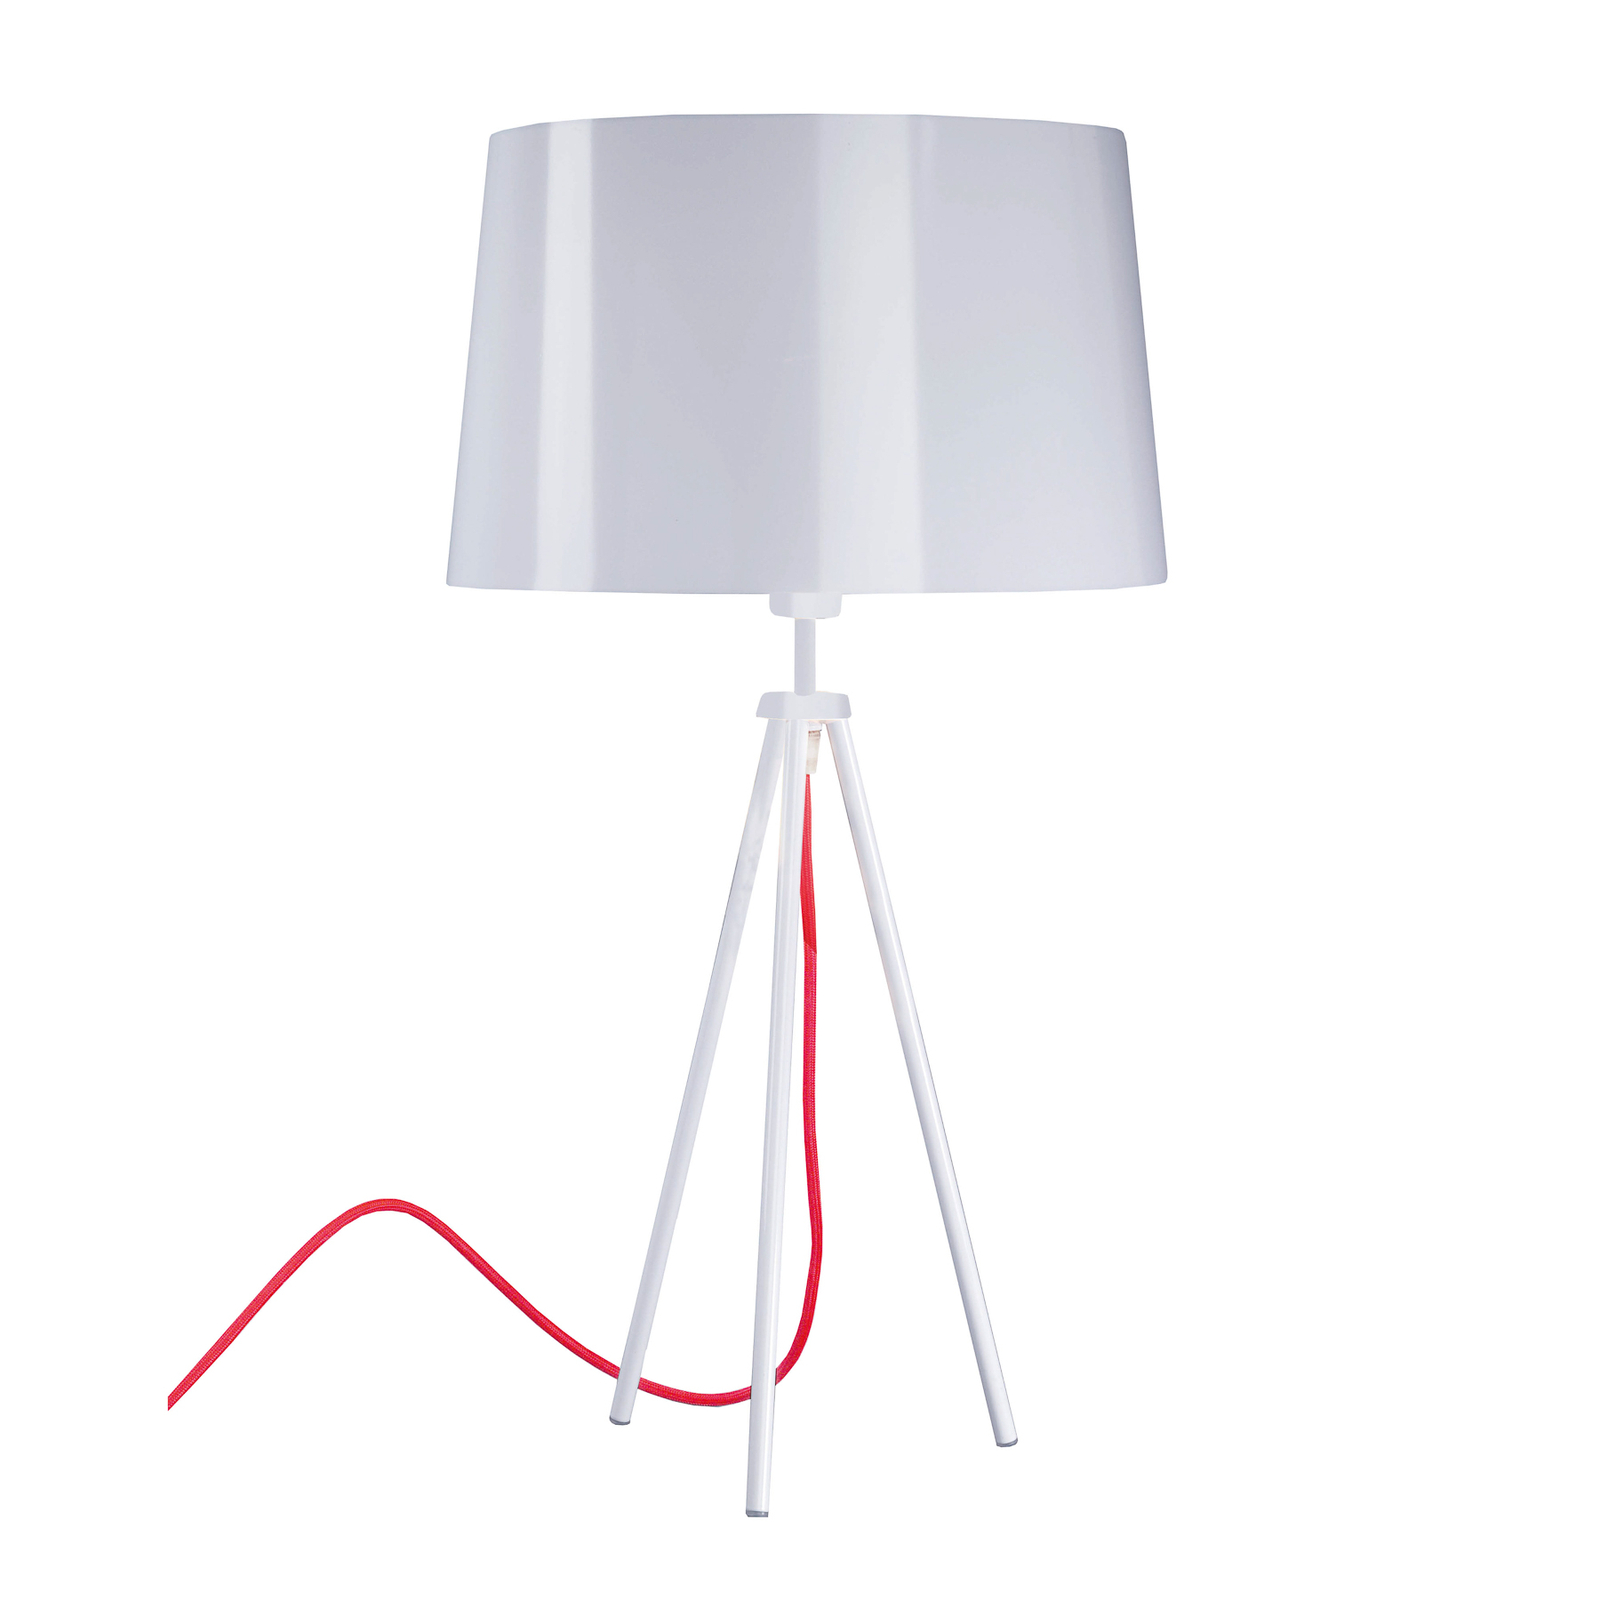 Aluminor Tropic -pöytälamppu valkoinen/punainen